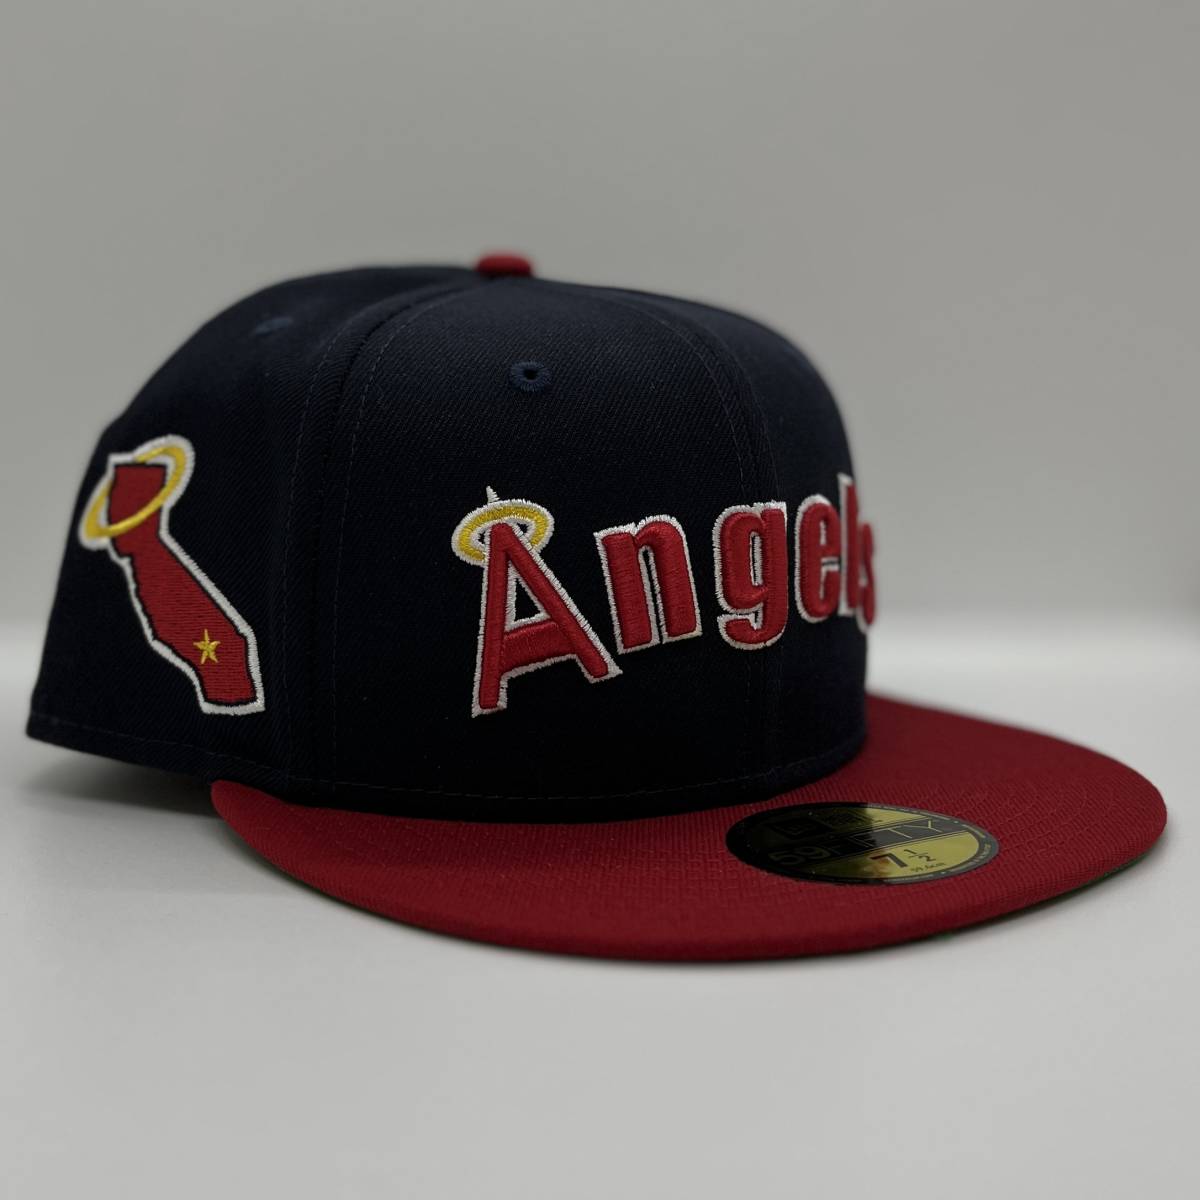 大切な NEW ERA ニューエラ キャップ ANGELS エンゼルス 7 1/4 59FIFTY CAP 大谷翔平選手所属 日本未発売 クーパーズタウン70年代 WBC 野球帽